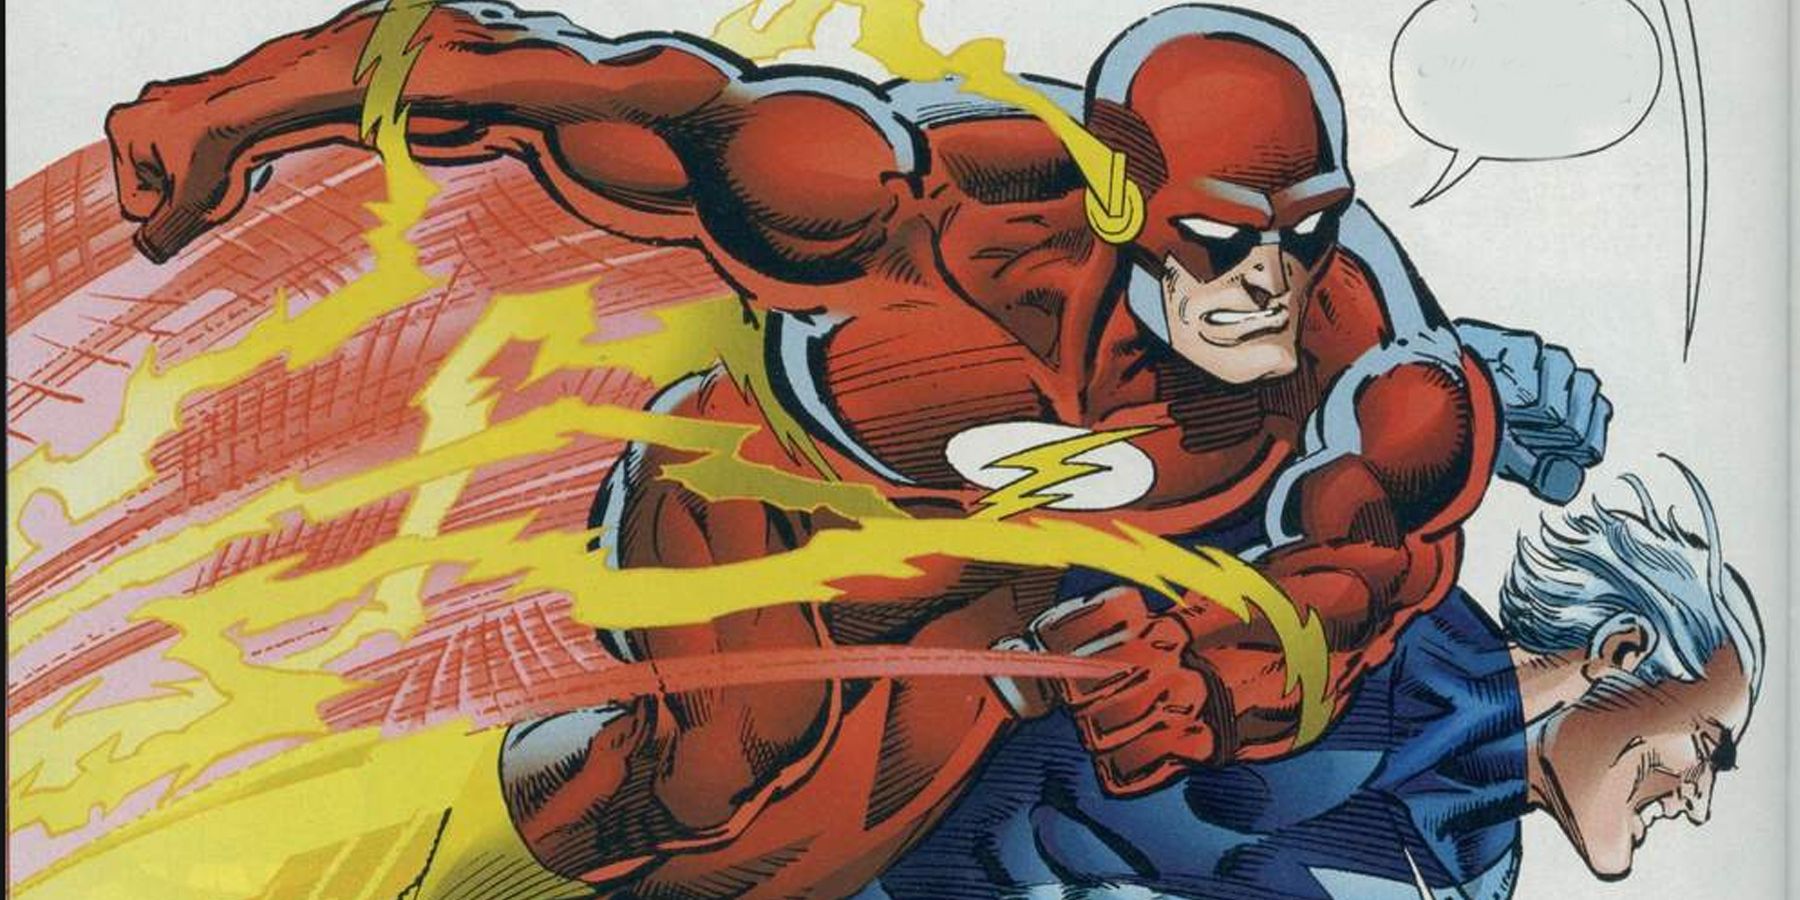 Flash vs Quicksilver is a major fight